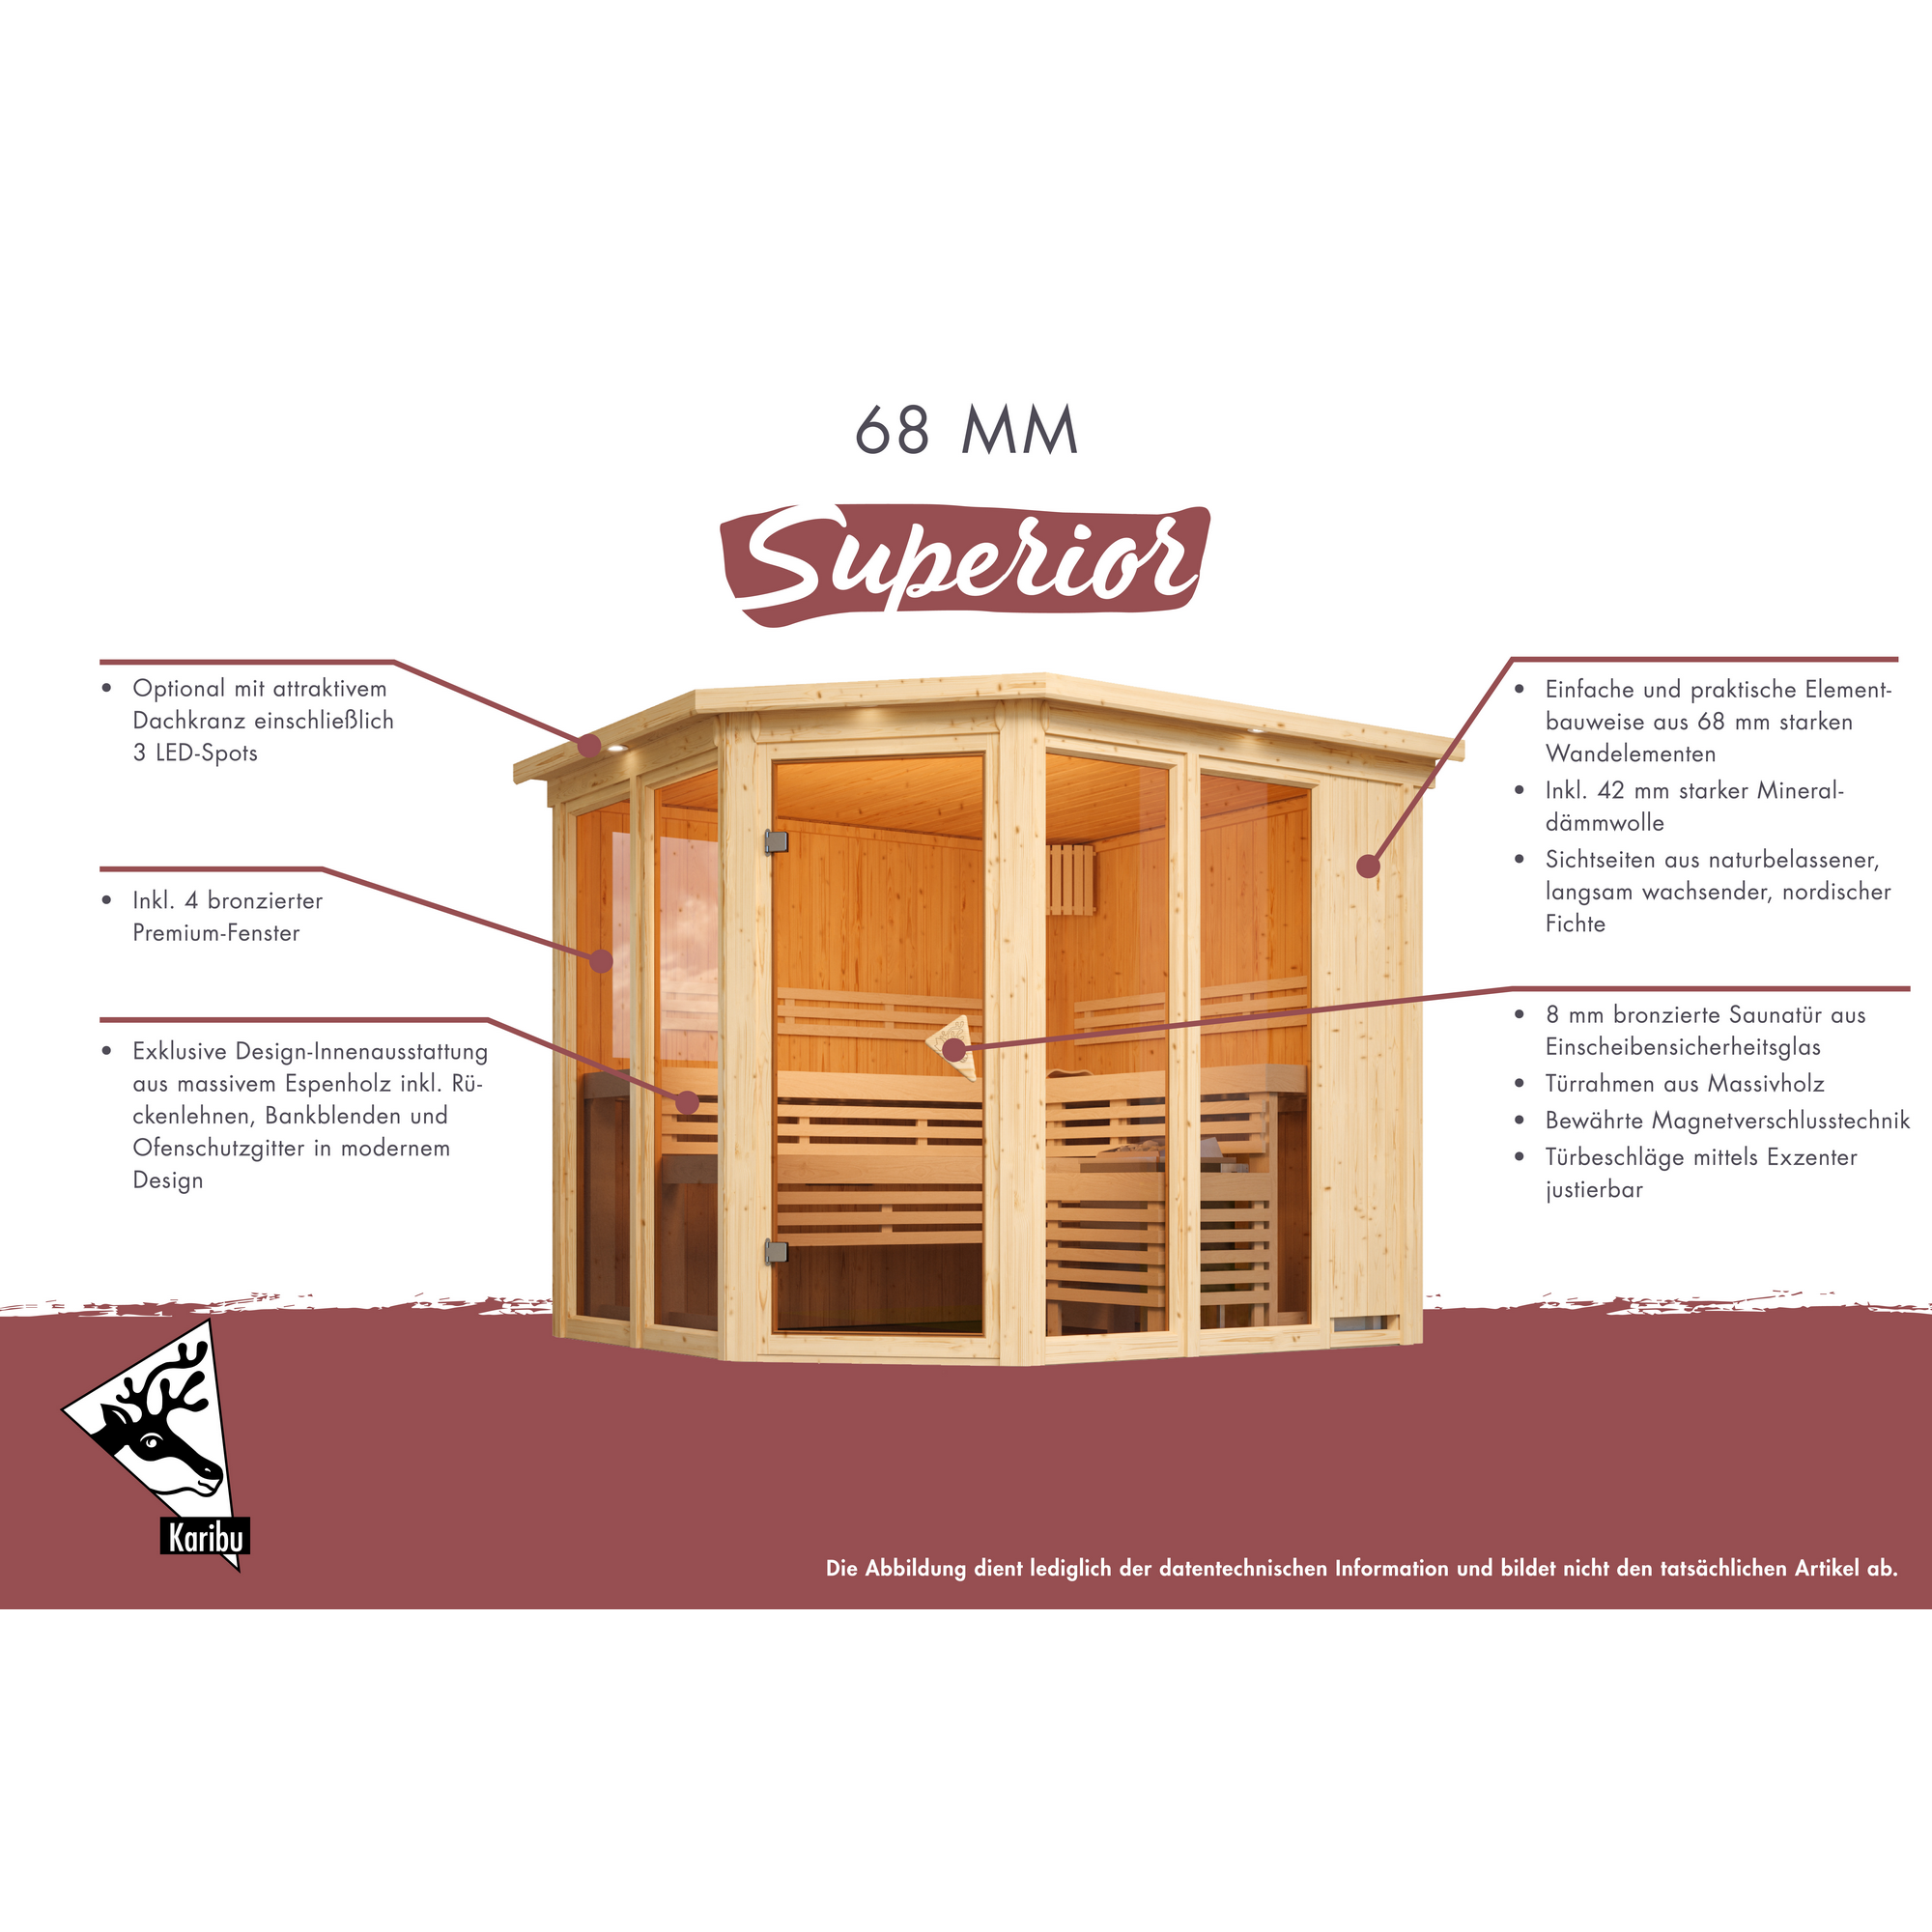 Sauna 'Ariadna 3' naturbelassen mit Kranz und bronzierter Tür 9 kW Bio-Ofen mit externe Steuerung 245 x 210 x 202 cm + product picture